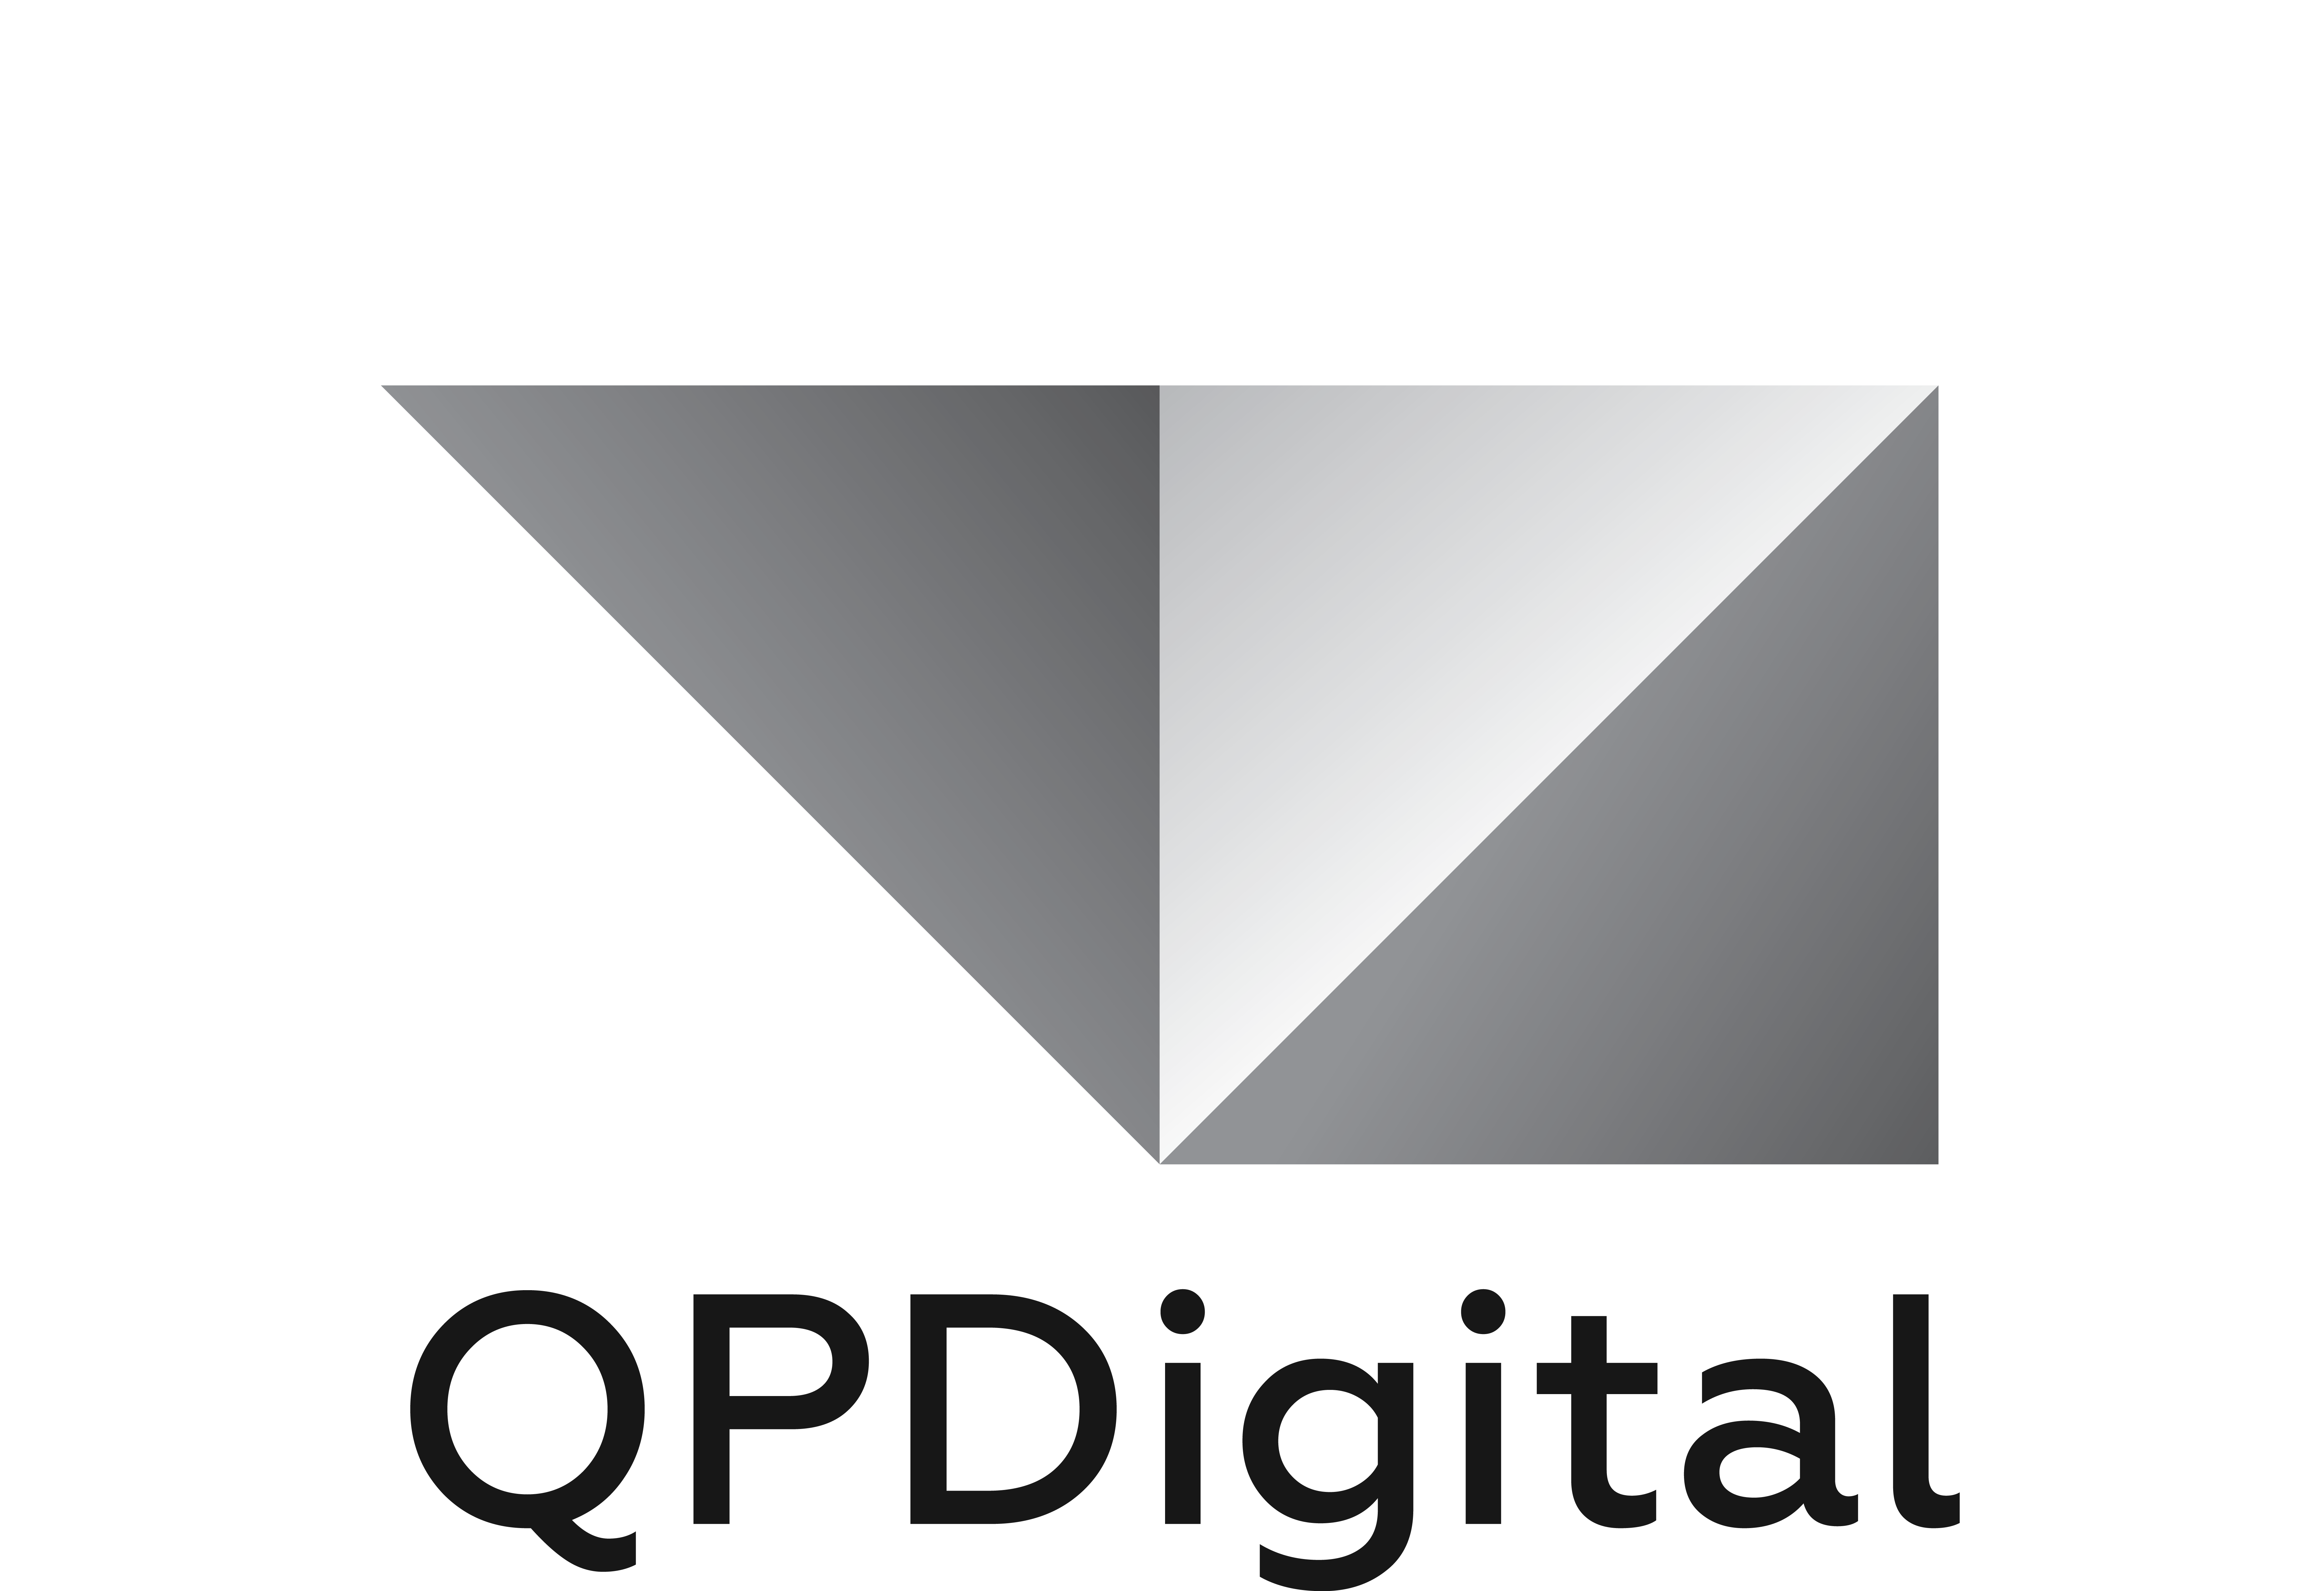 QPDigital